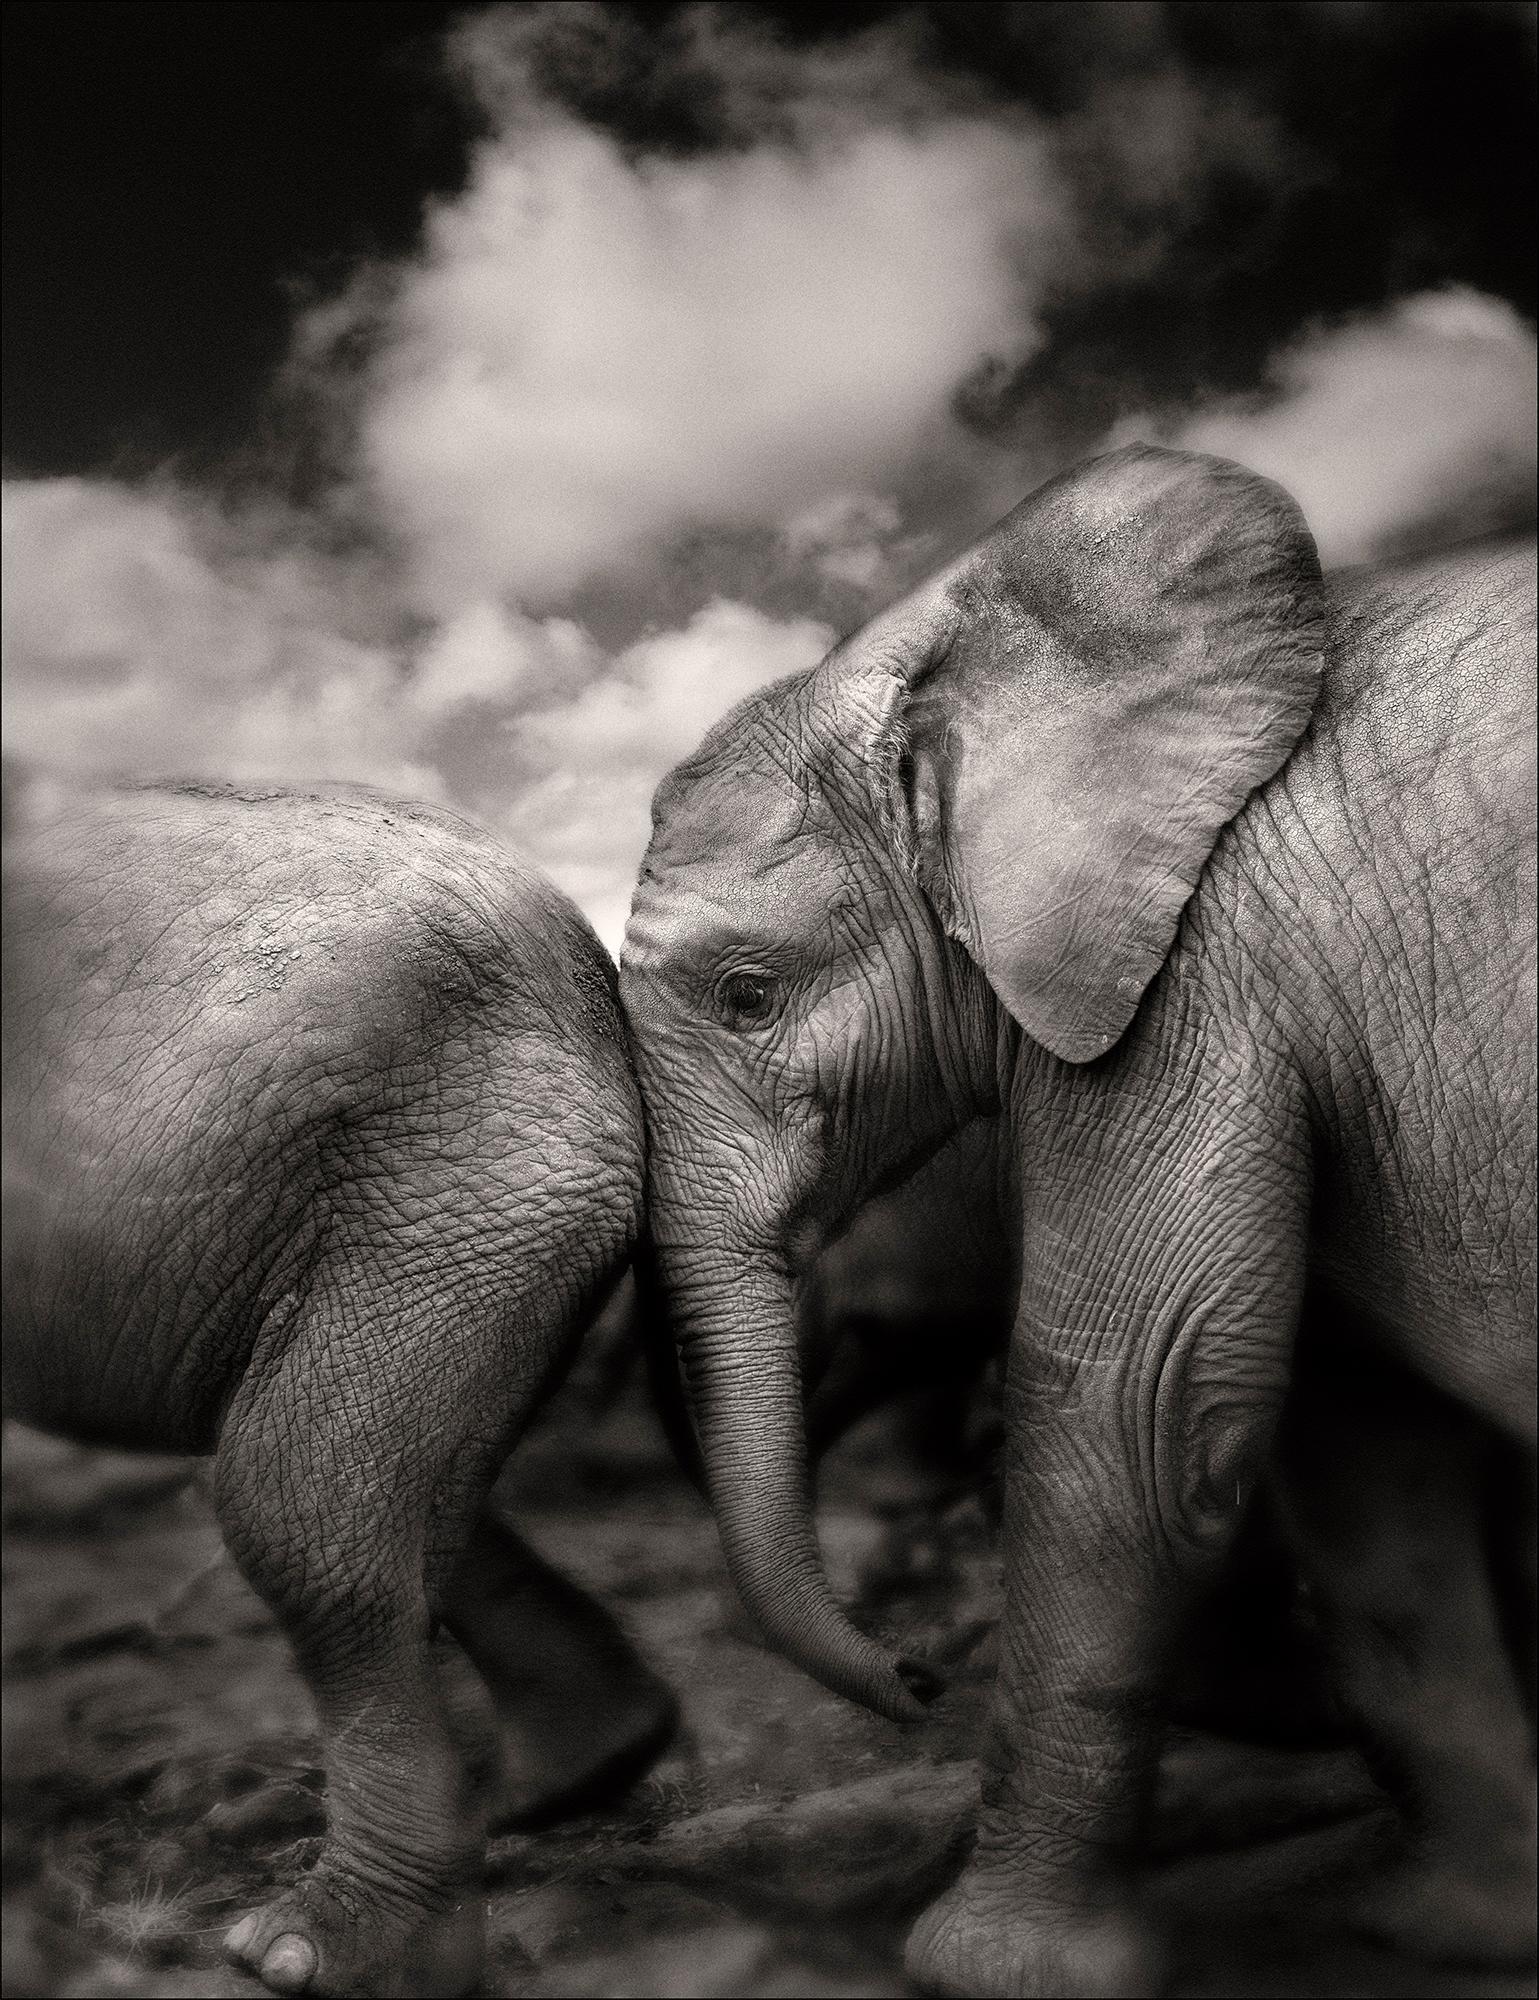 Joachim Schmeisser Black and White Photograph - Suguta, Kenya, Elephant, black and white photography, wildlife